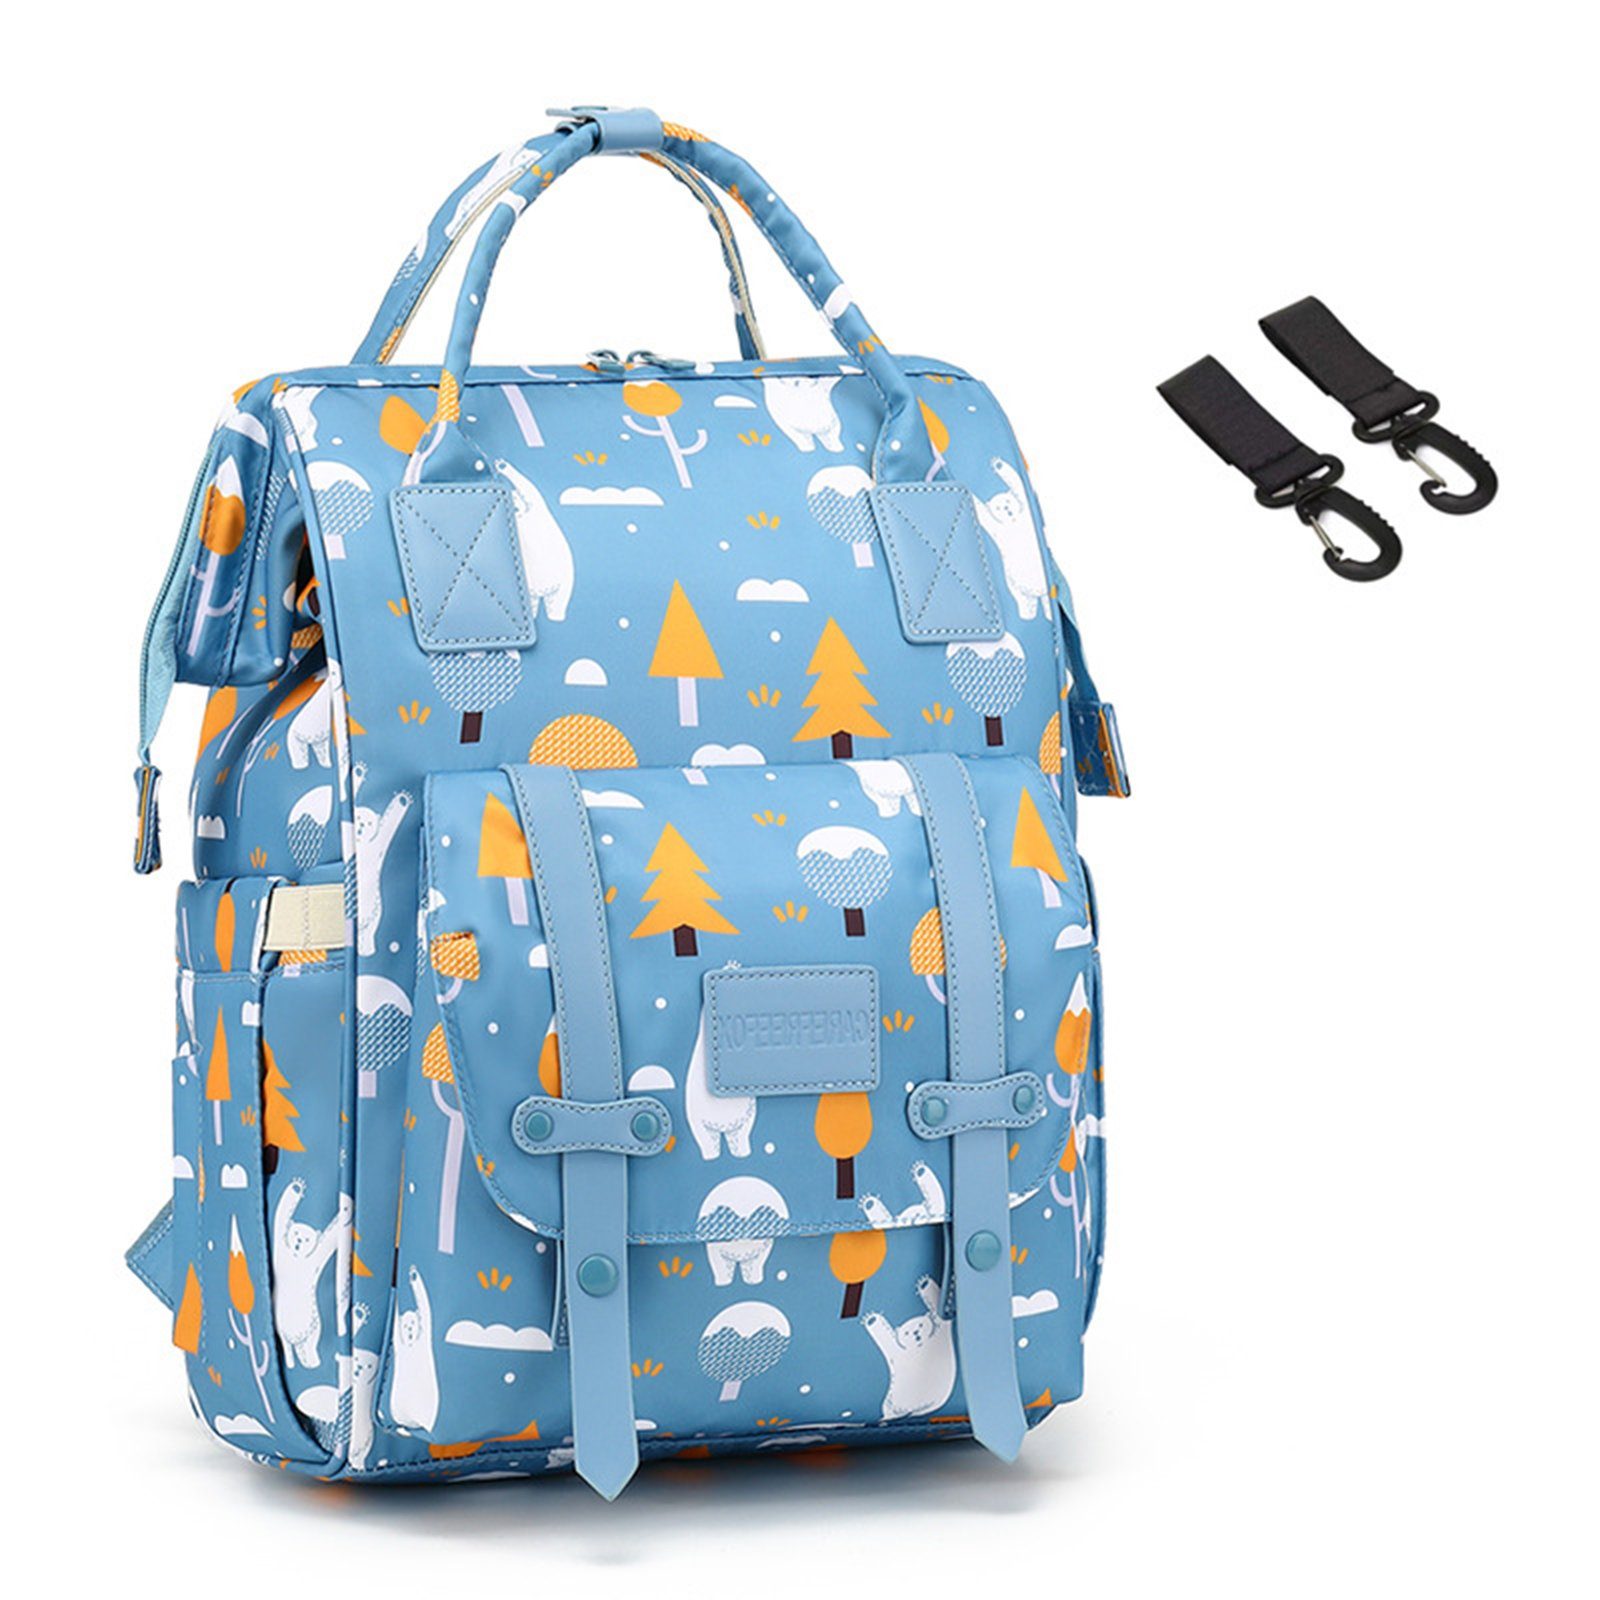 OKWISH Wickelrucksack Wickeltasche Rucksack Baby Multifunktions-Babytaschen wasserabweisend (Windeln Babyflasche Milchfläsche Rucksack Tasche mit USB-Anschluss, Multifunktional, Babytasche, Wickelrucksack), mit Kinderwagen-Haken Blau